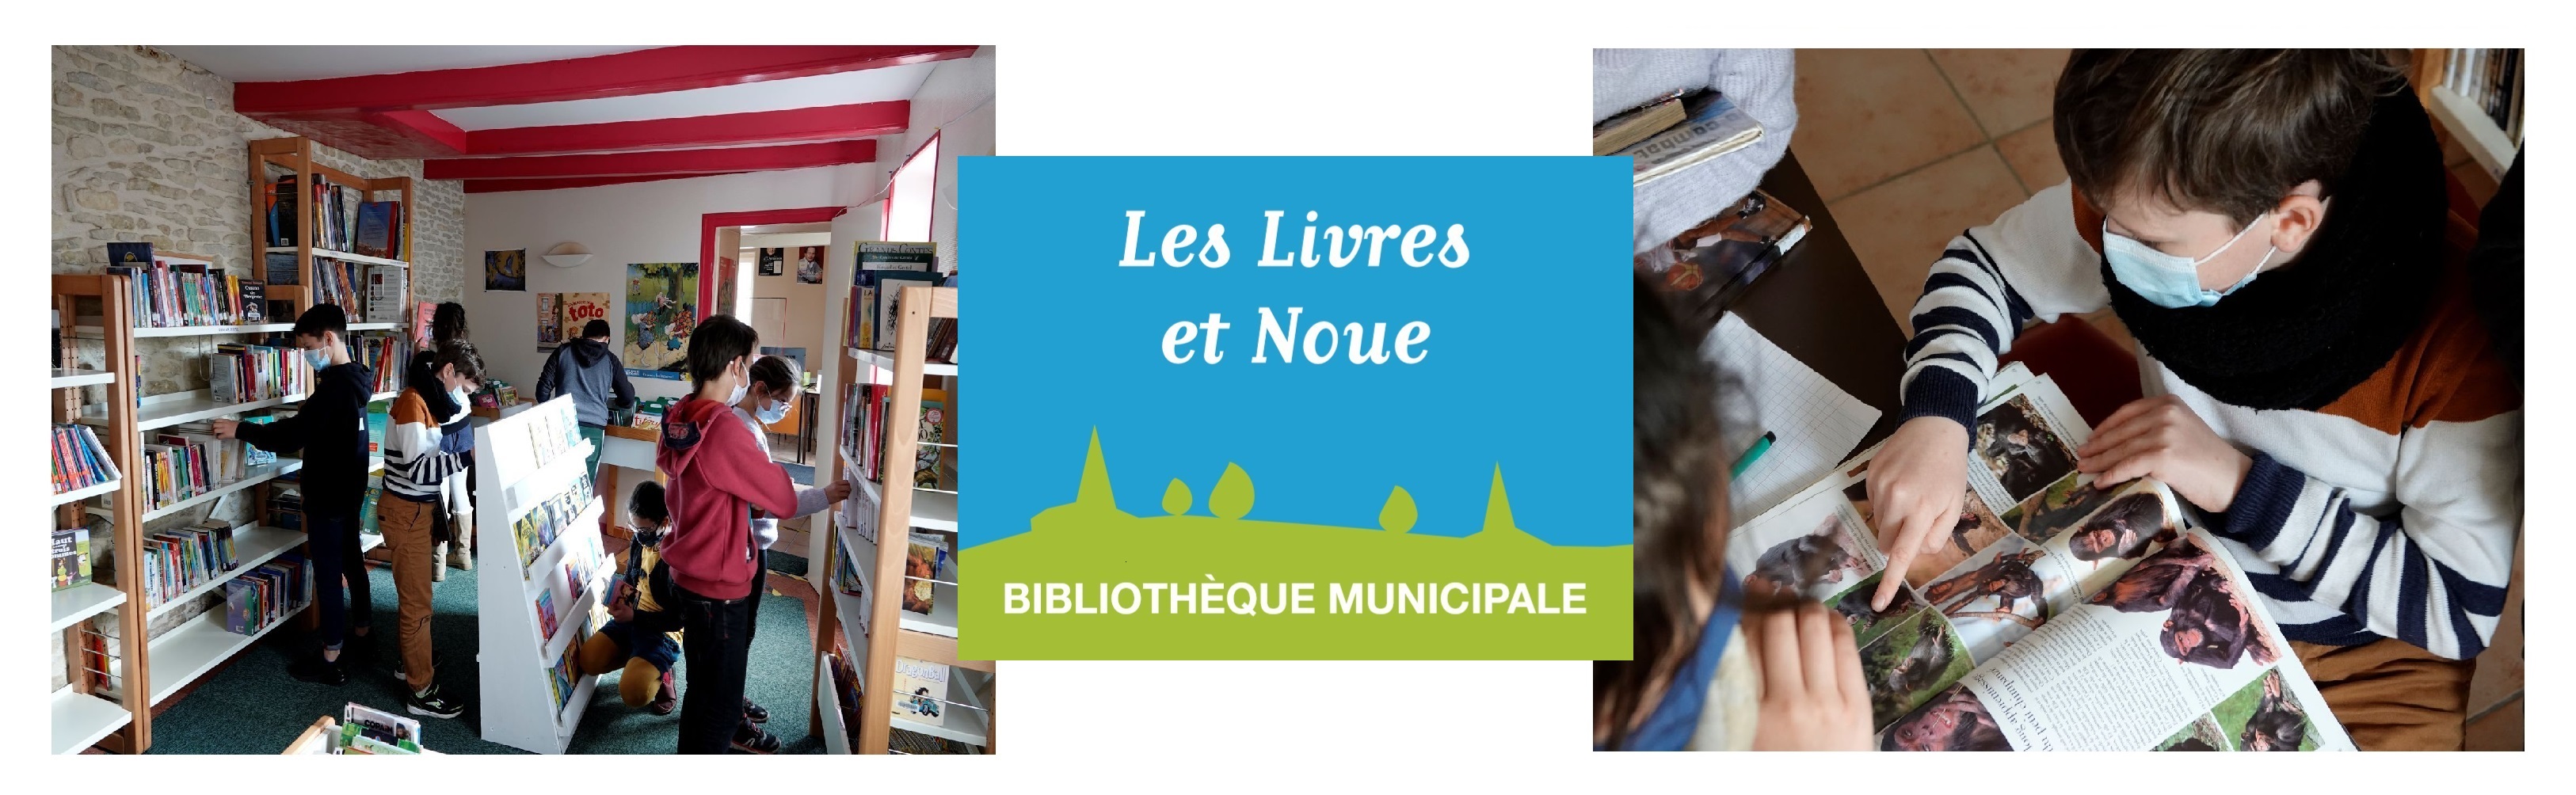 Bibliothèque Les Livres et Noue bis